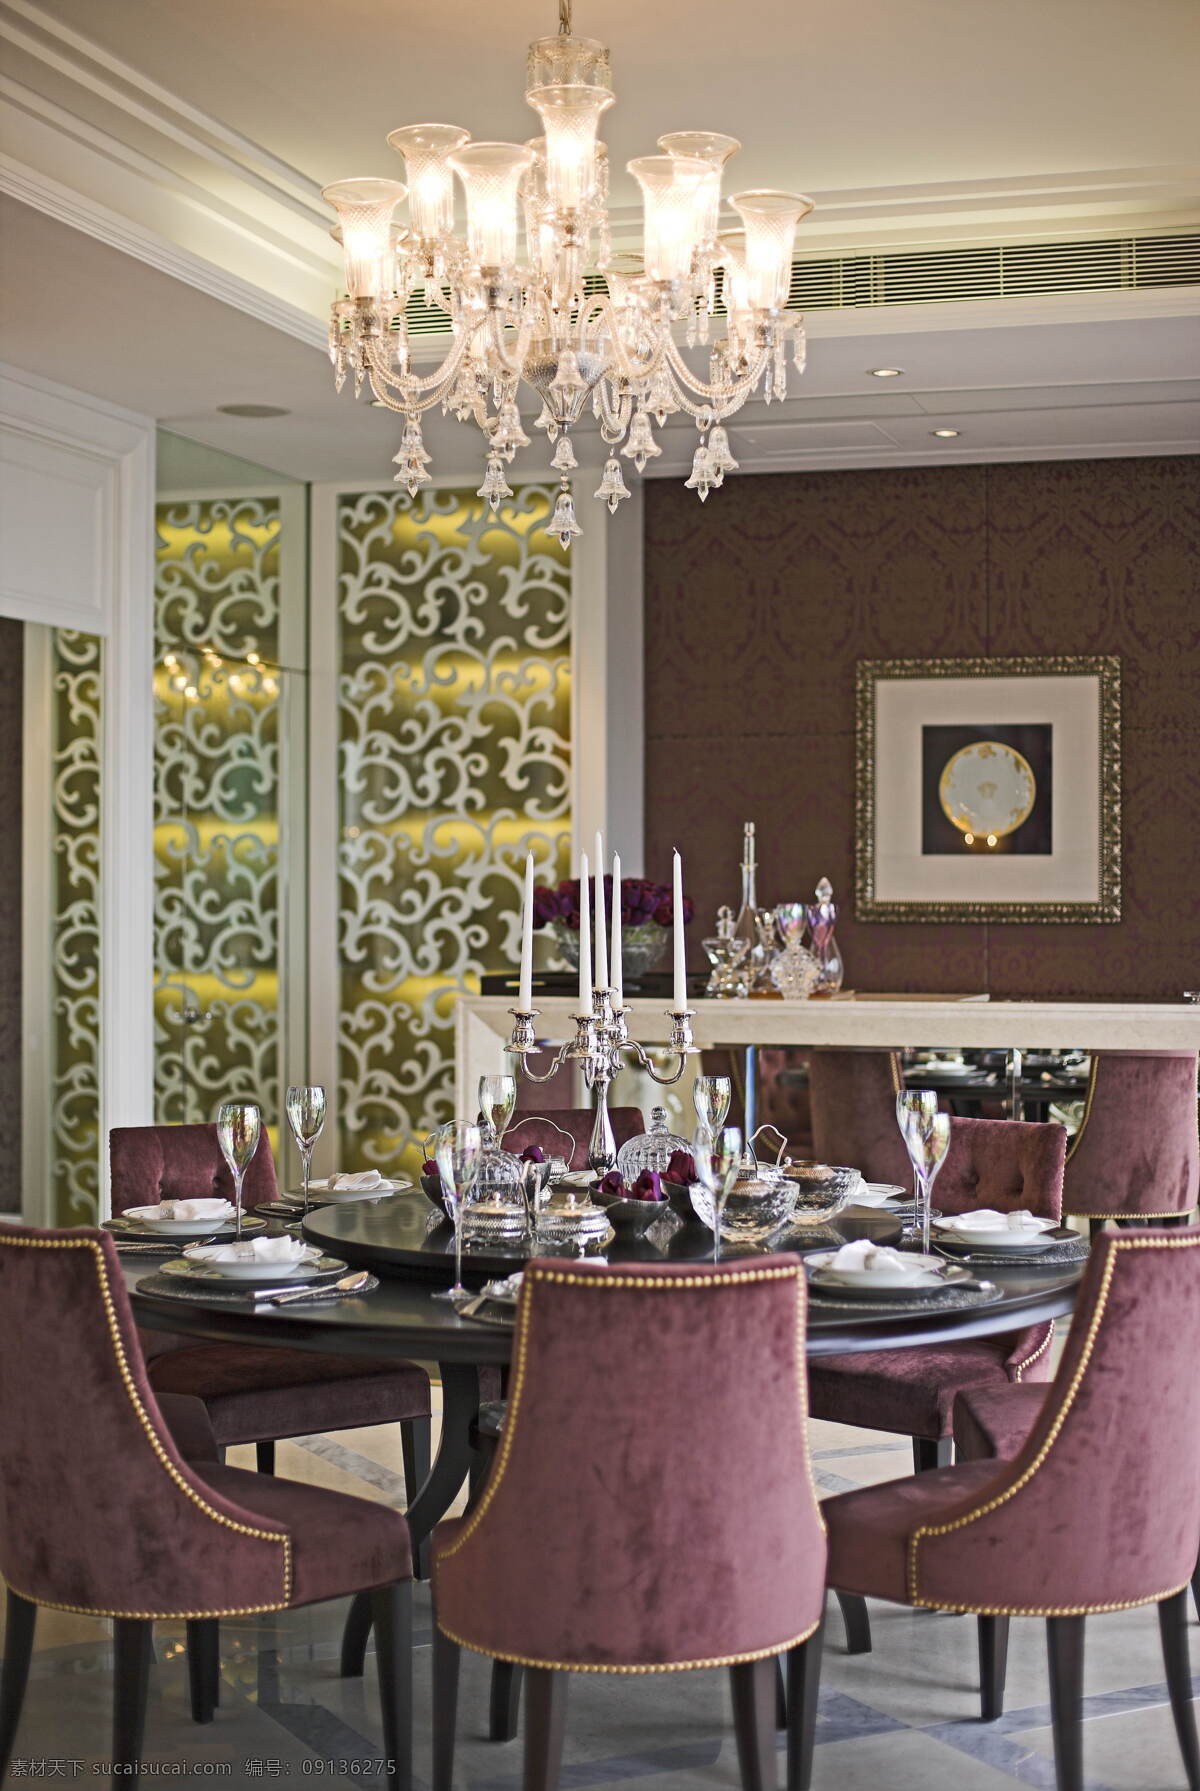 欧式 奢华 大 餐桌 室内装修 效果图 水晶灯 紫红色椅子 烛台 客厅装修